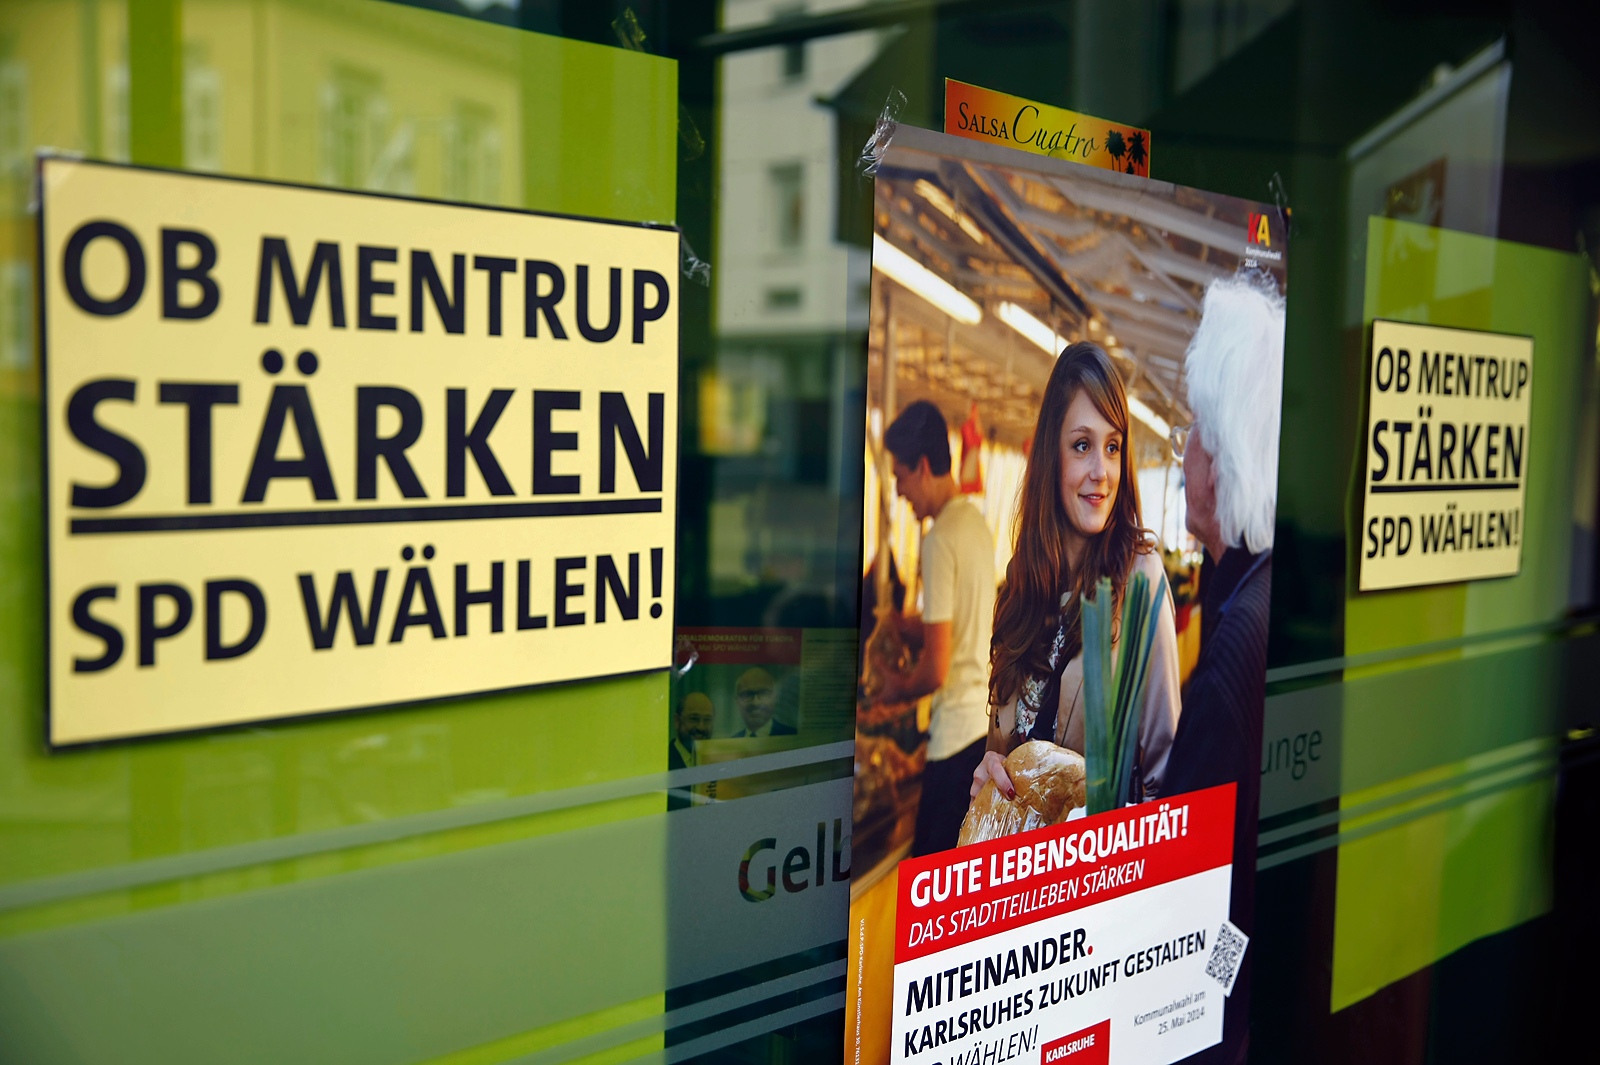 spd kommunalwahlkampangne 2014 by www.ch-ernst.de